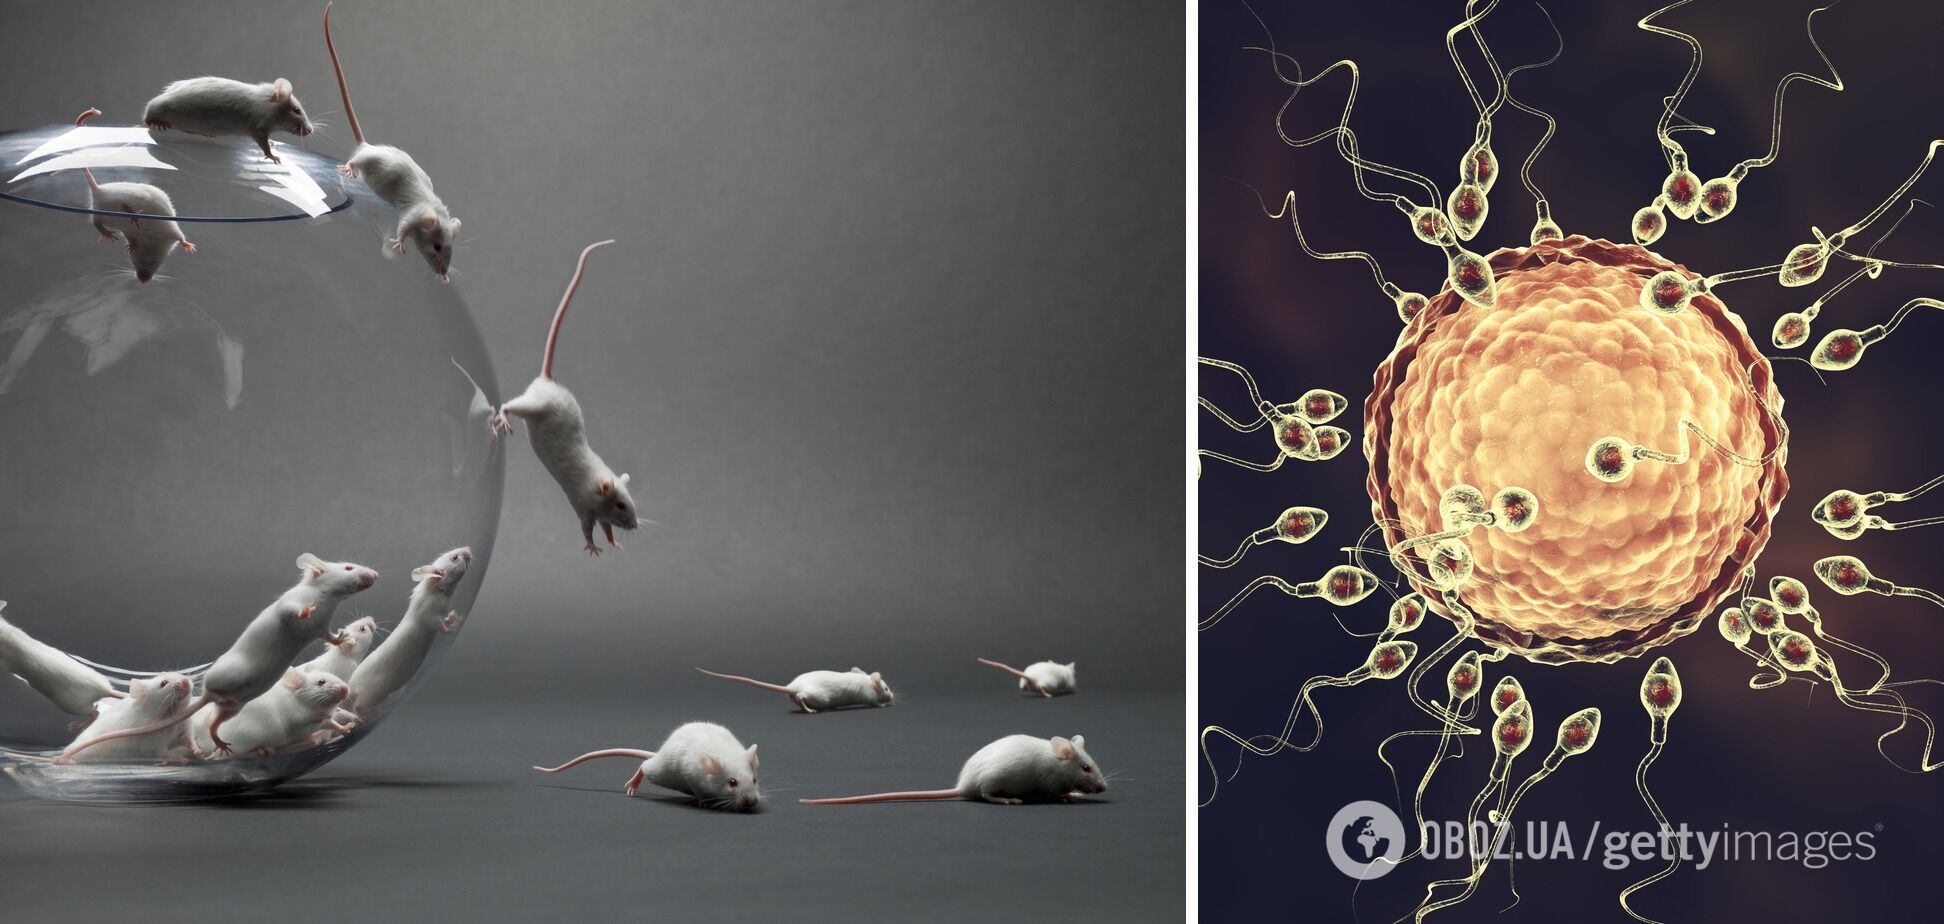 Исследователи из Германии изучили генетику разных сперматозоидов мышей